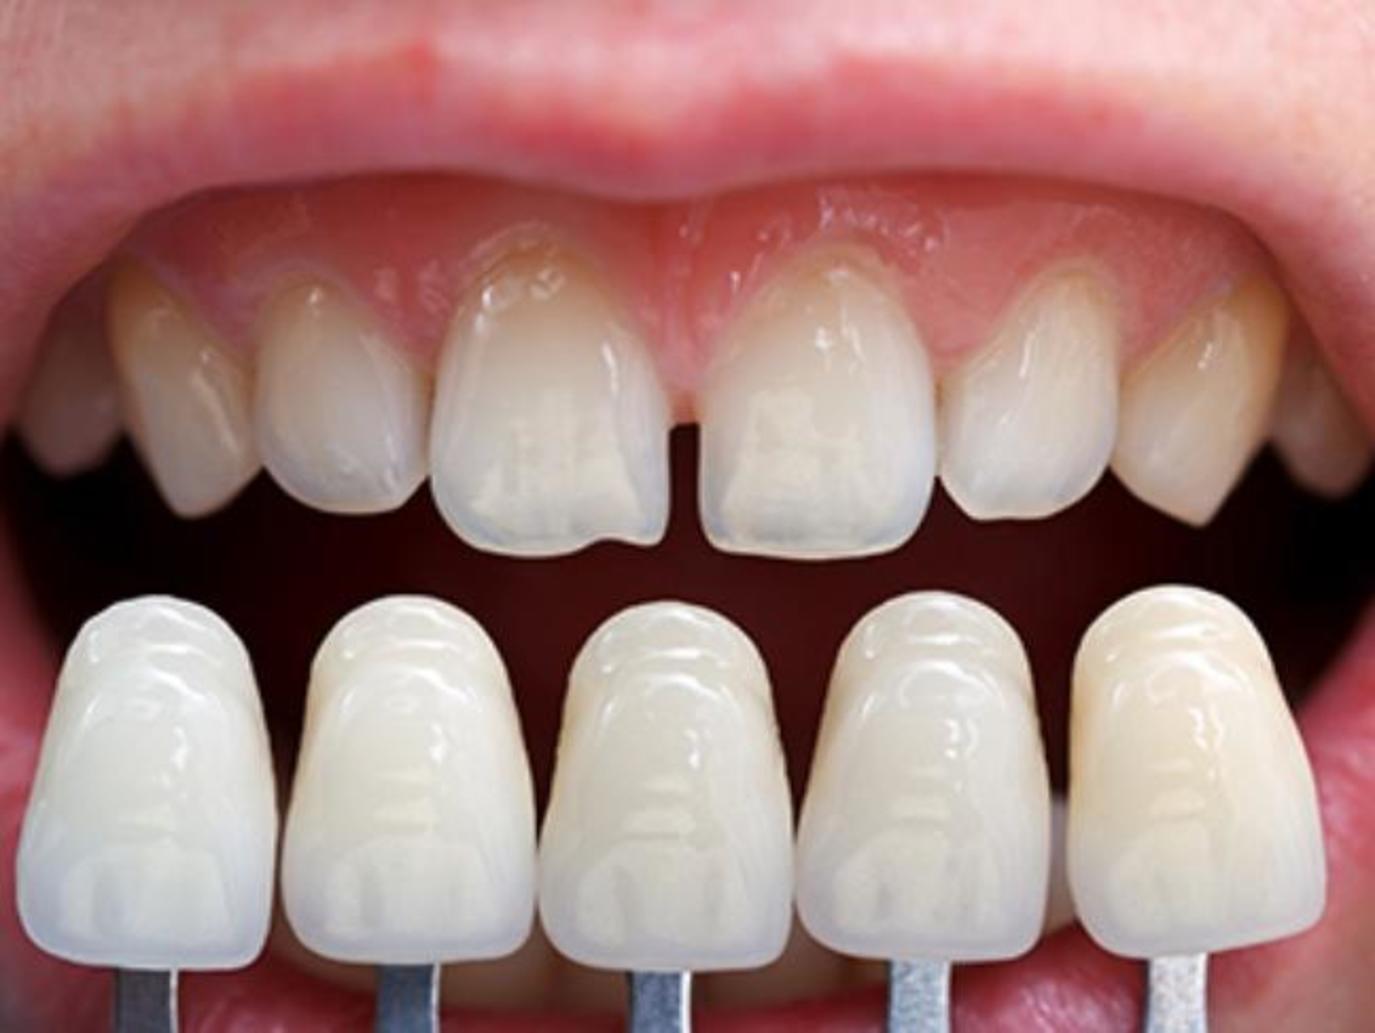 طبيب أسنان: احذروا ابتسامة هوليوود! | مجلة سيدتي